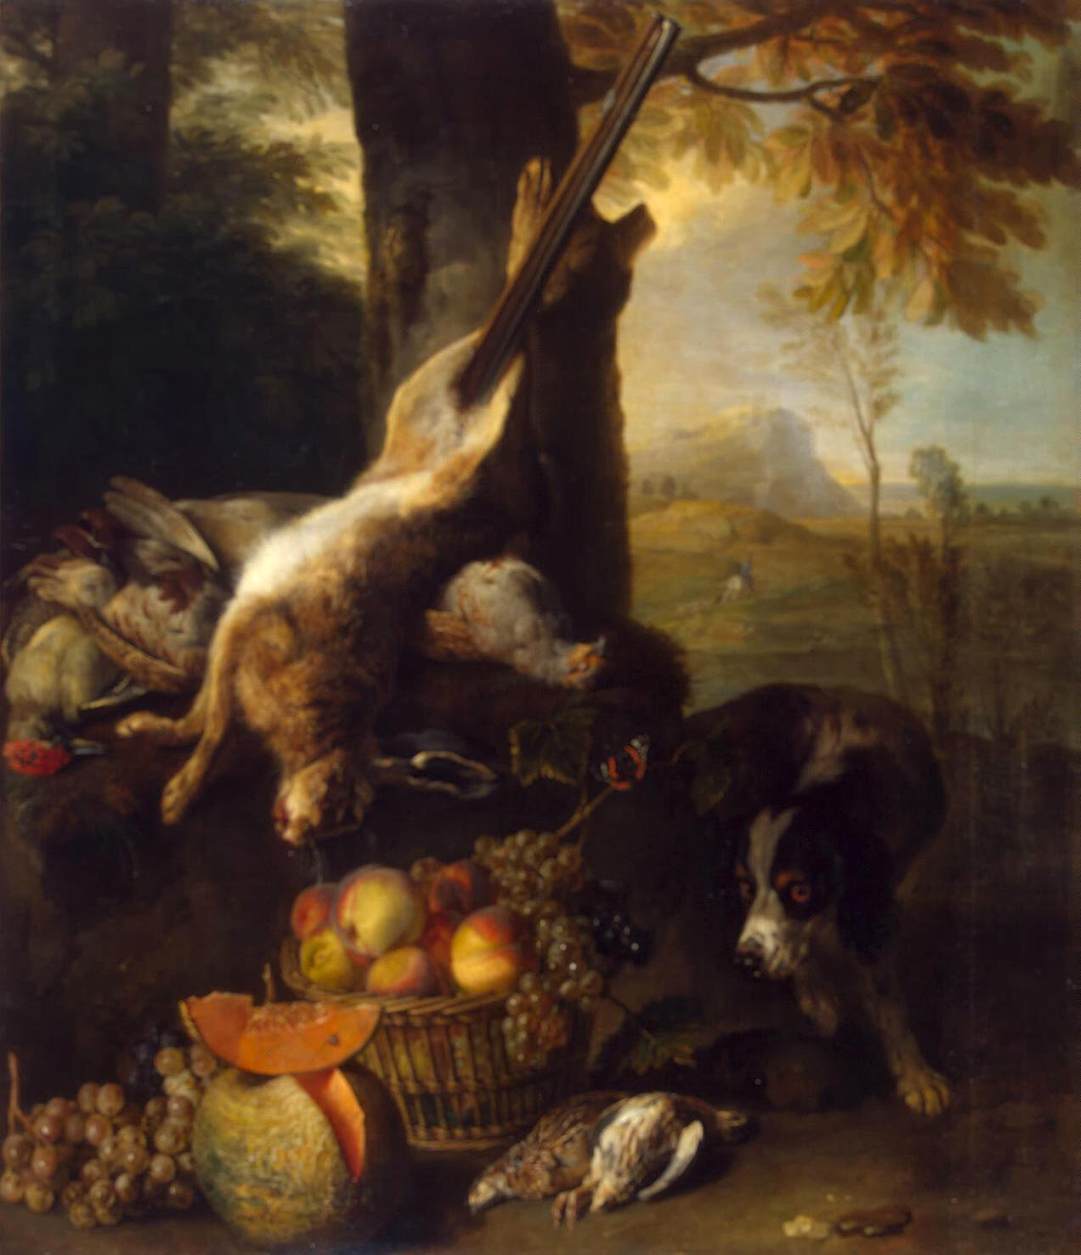 Bodegón mit toter Hase und Frucht